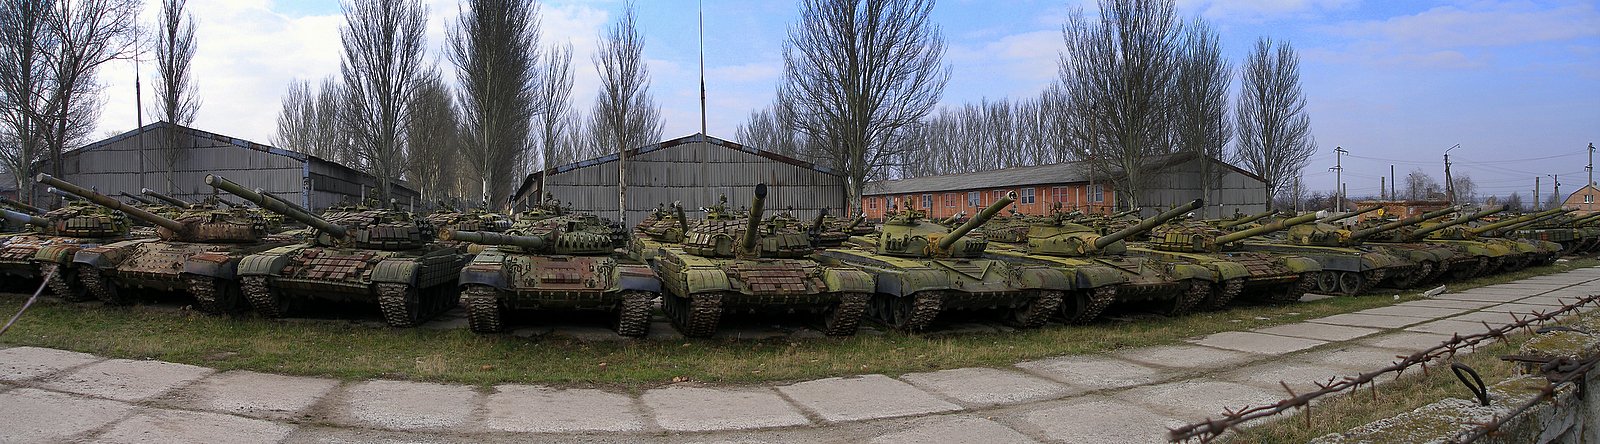 ТТХ послевоенных танков СССР т72 т64 т 72 т 64